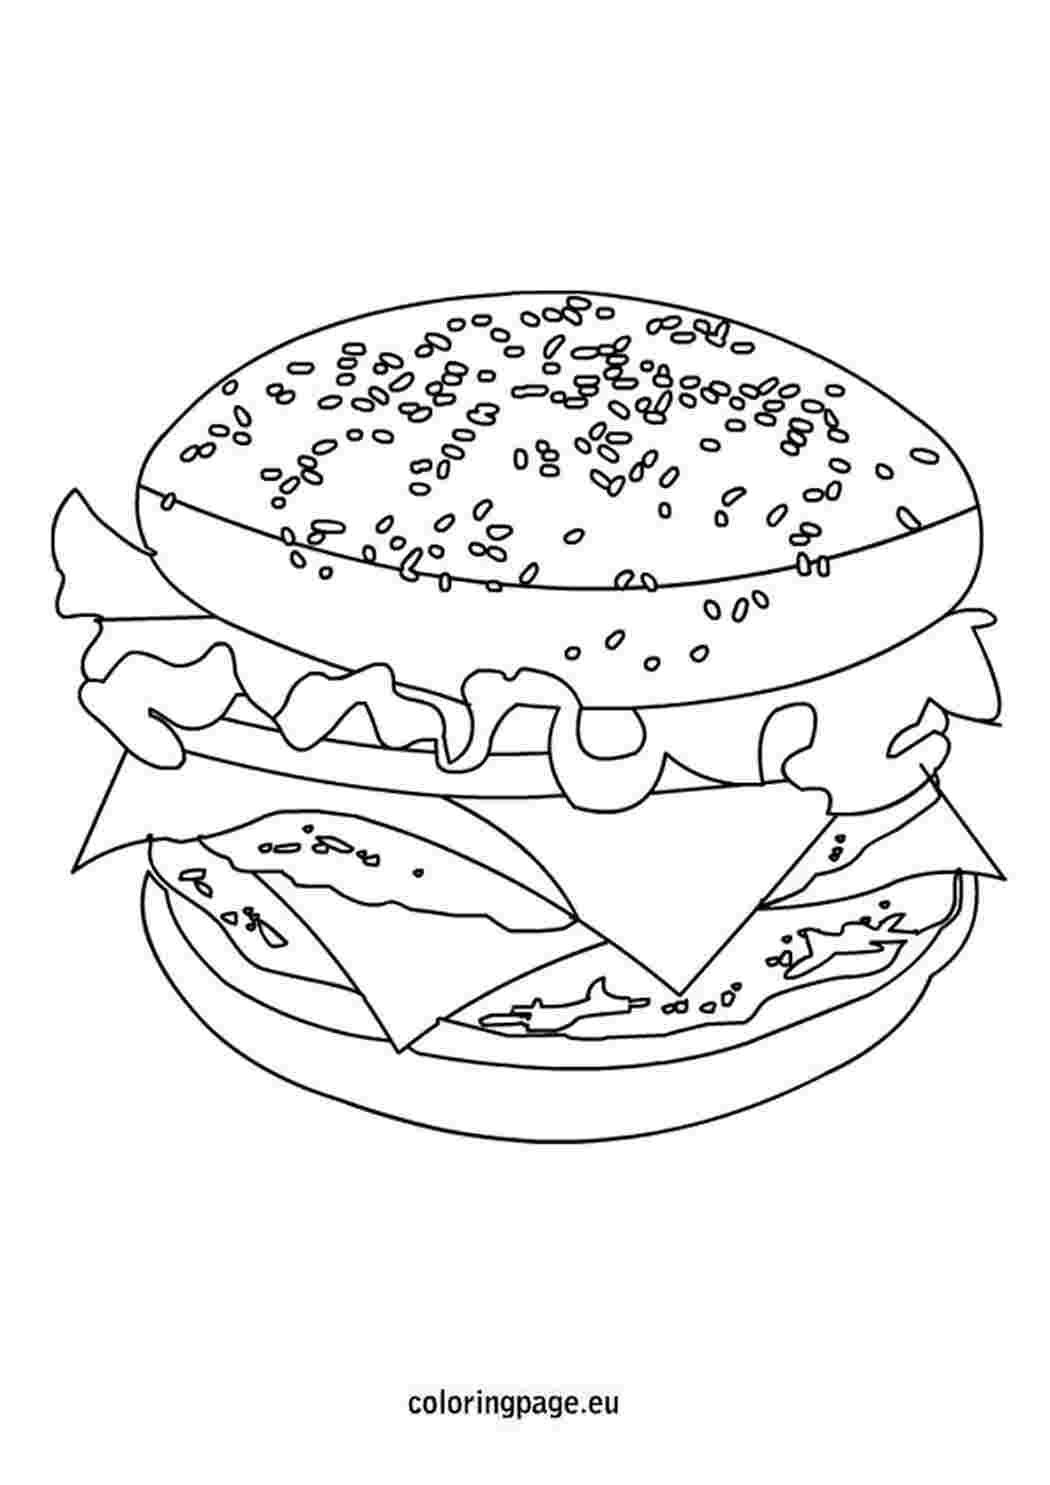 Раскраски сложные бургер